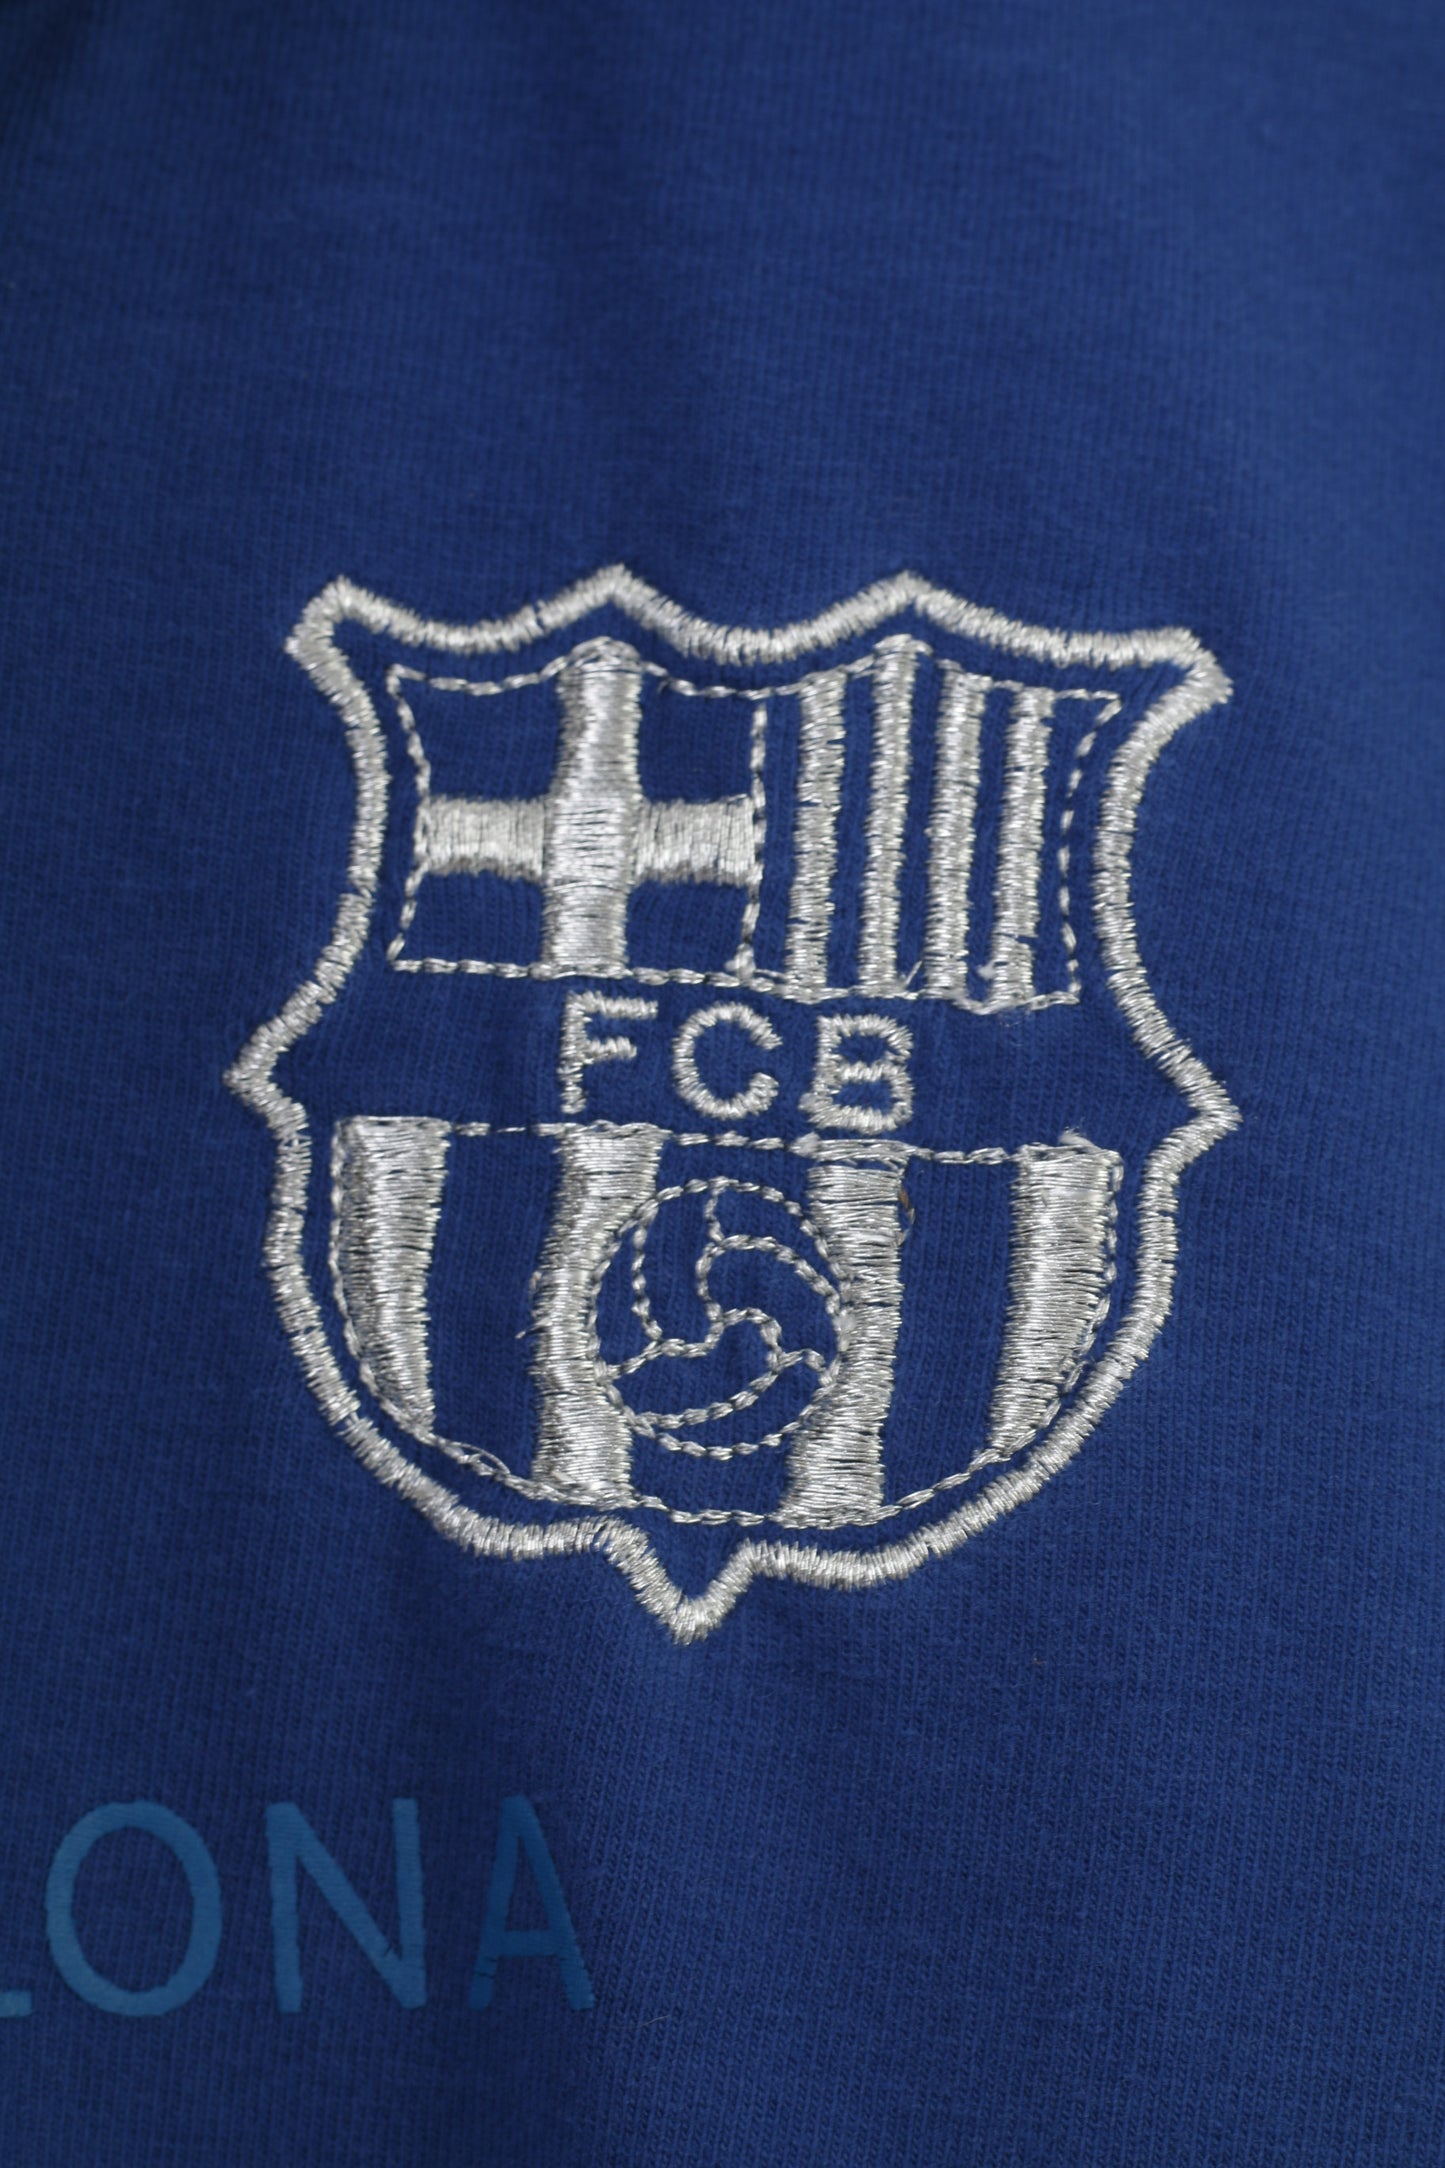 Polo FC Barcelona da donna LM grafica blu estiva vintage manica corta in cotone Football Club FCB Top 